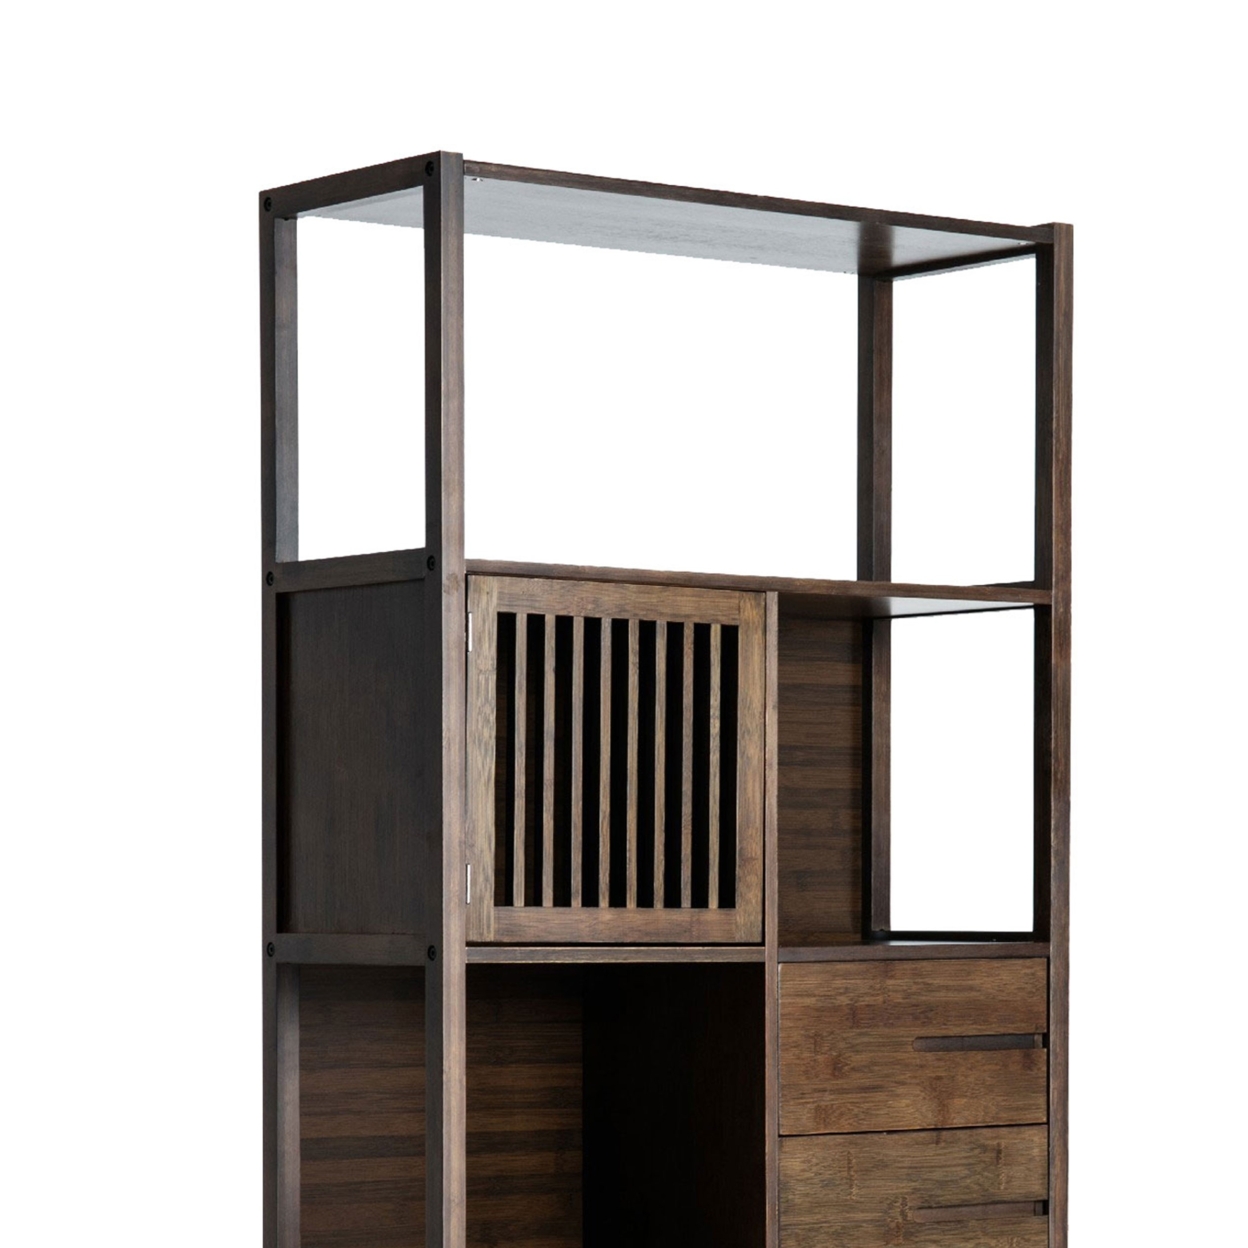 Axa 68 Inch Bamboo Shelf Bookcase With Cabinet, Left Facing, Dark Brown- Saltoro Sherpi